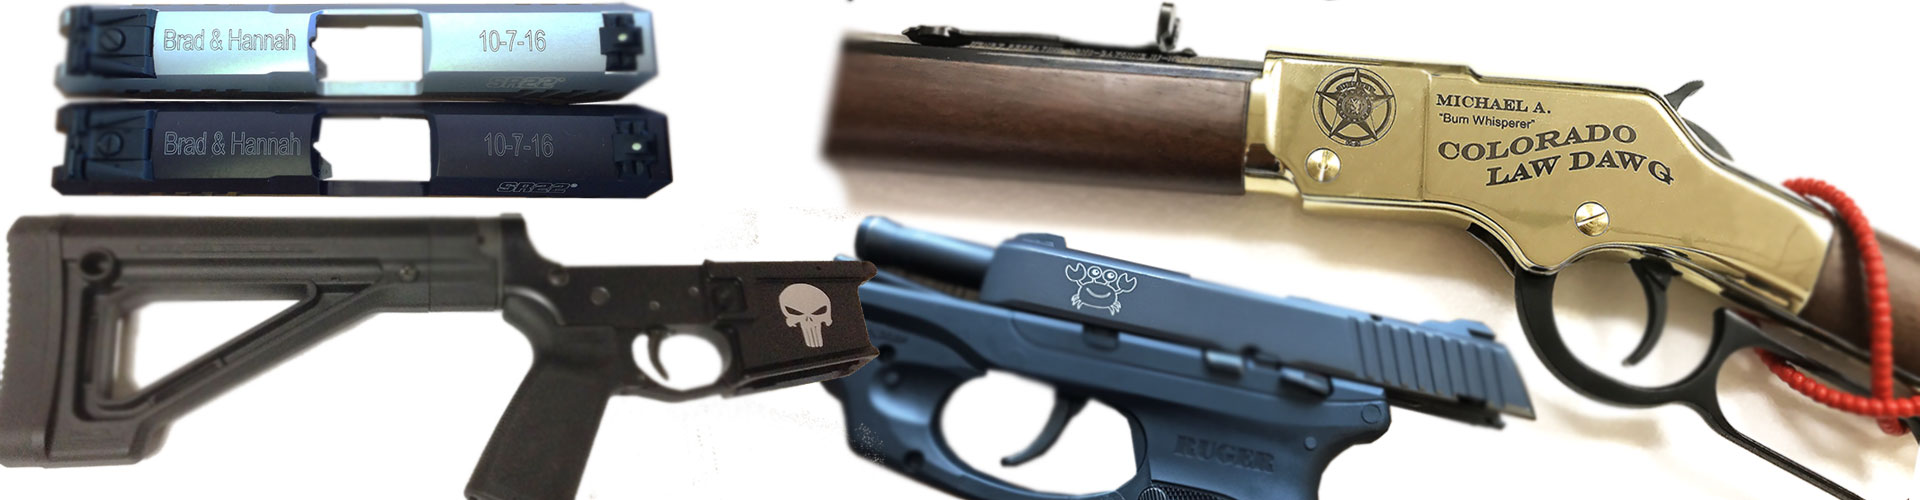 custom gun laser engraving, Custom Gun Laser Engraving and Firearm